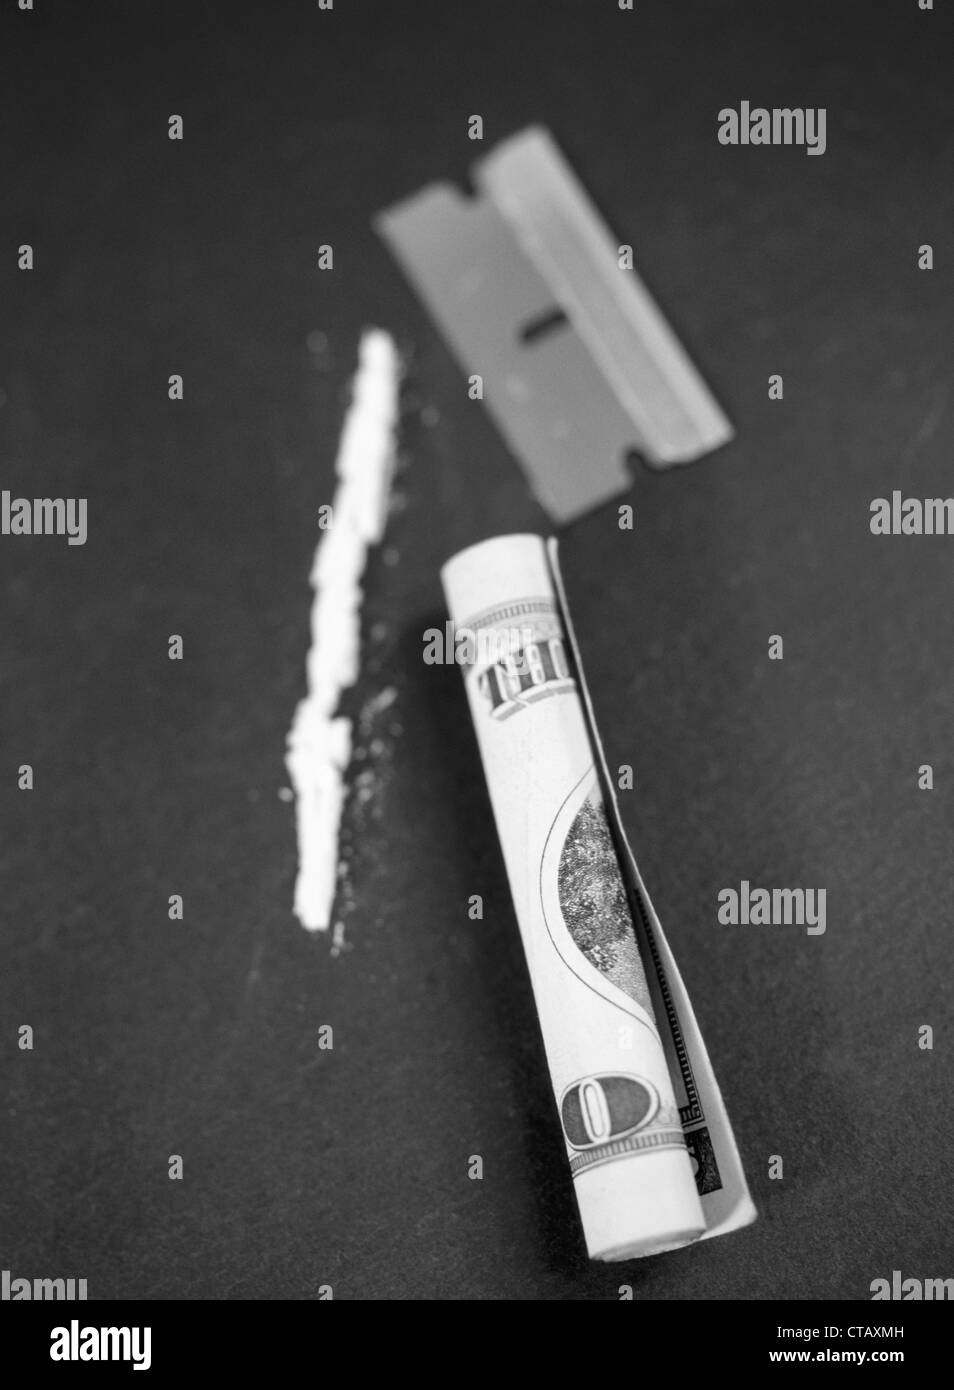 Una línea de cocaína, 20 dollar bill y una cuchilla de afeitar. Foto de stock